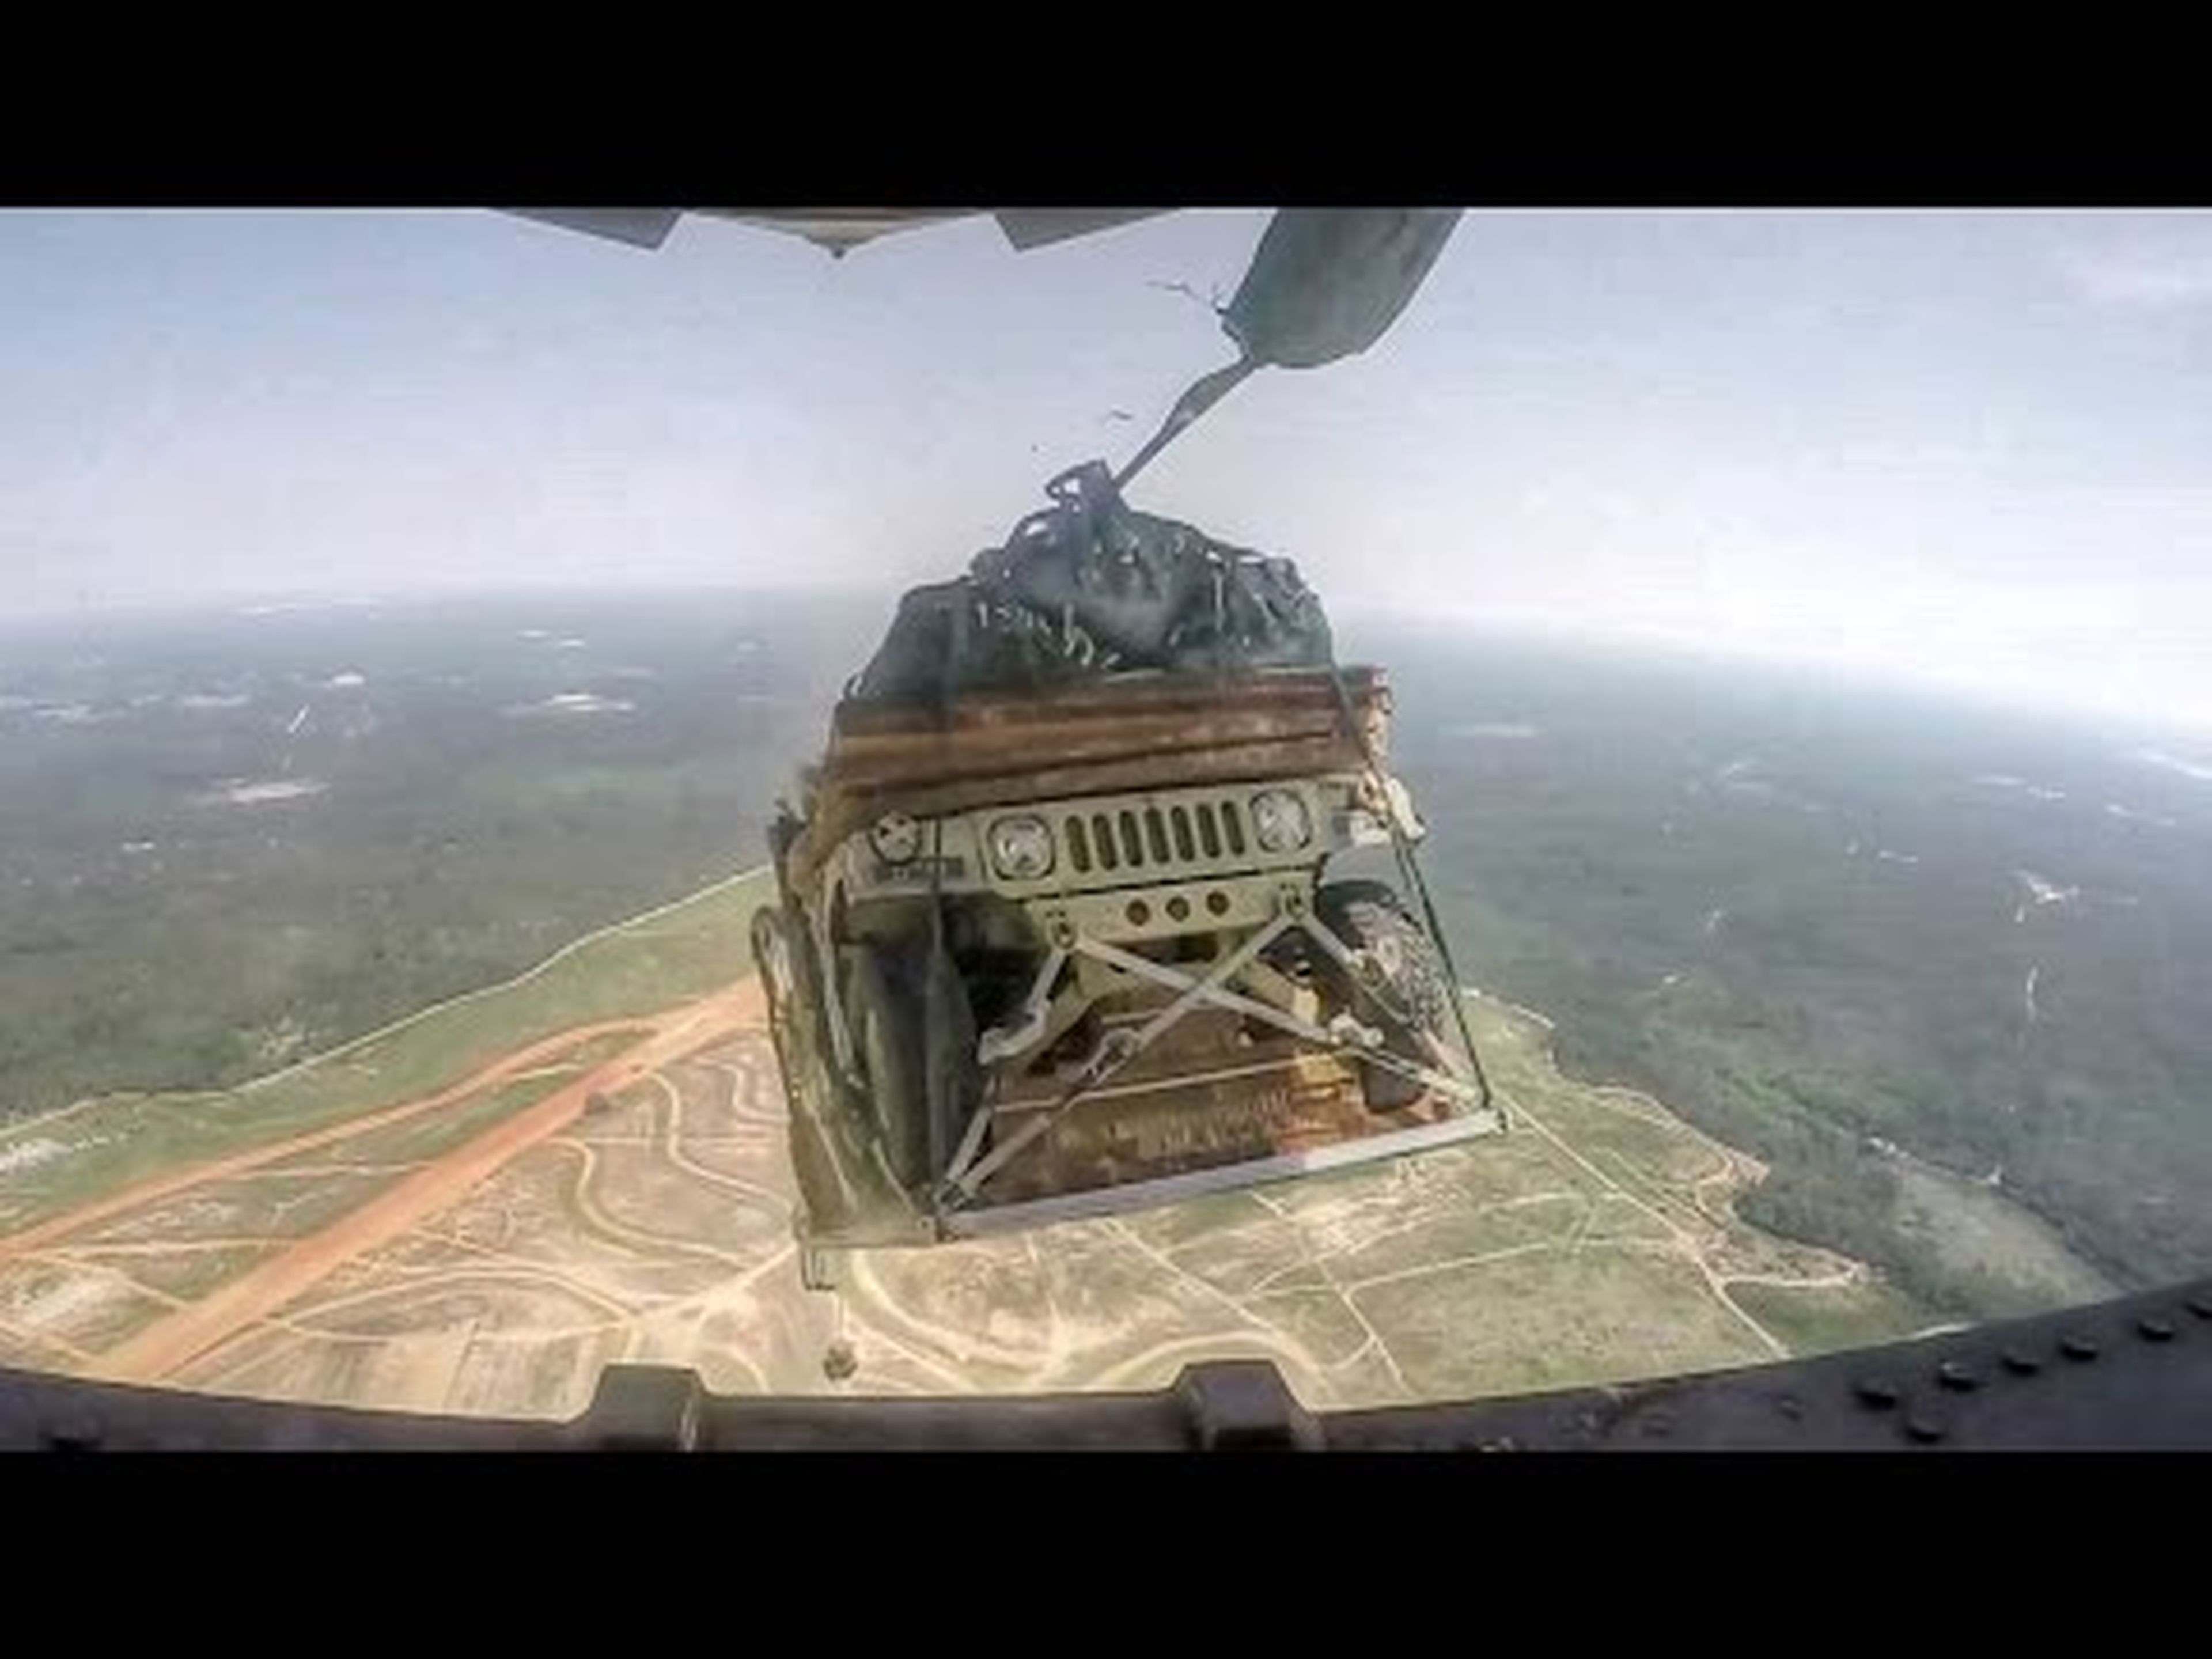 Hummer saltando desde un avión